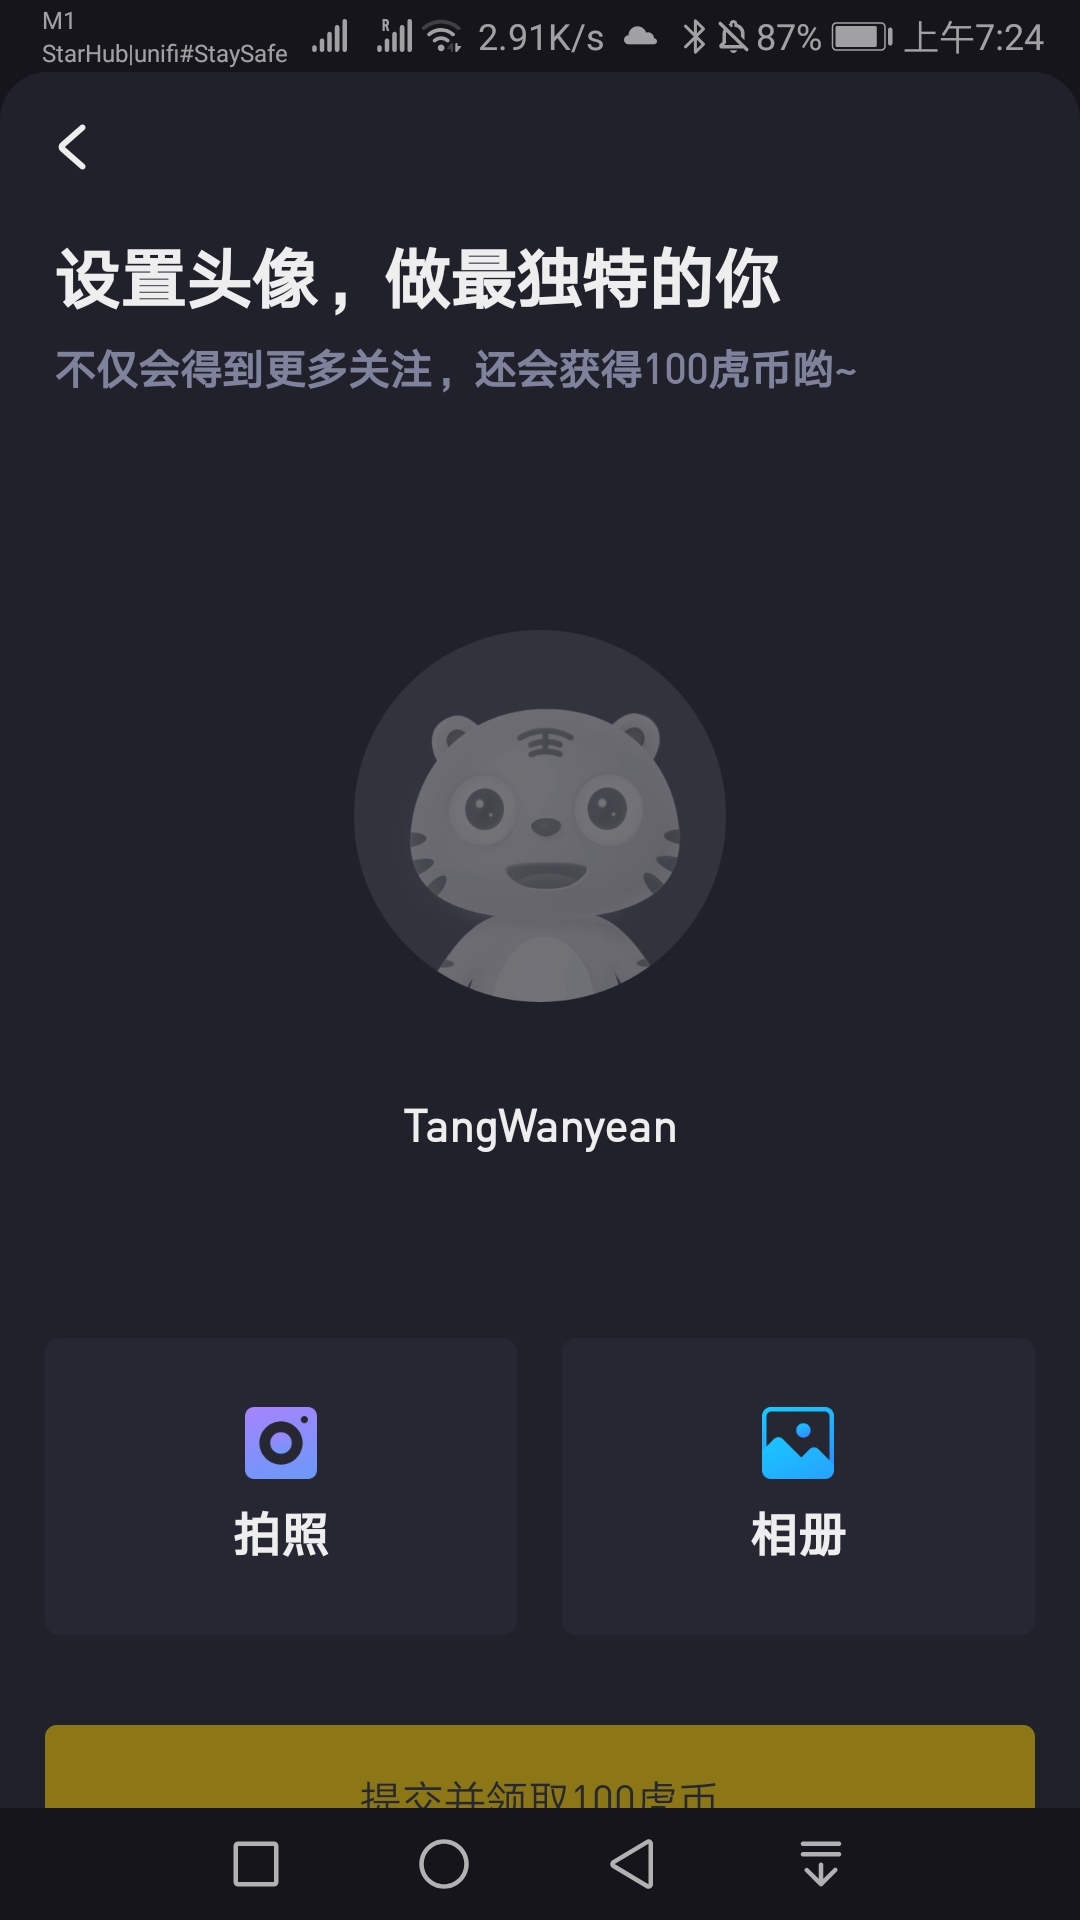 TangWanyean